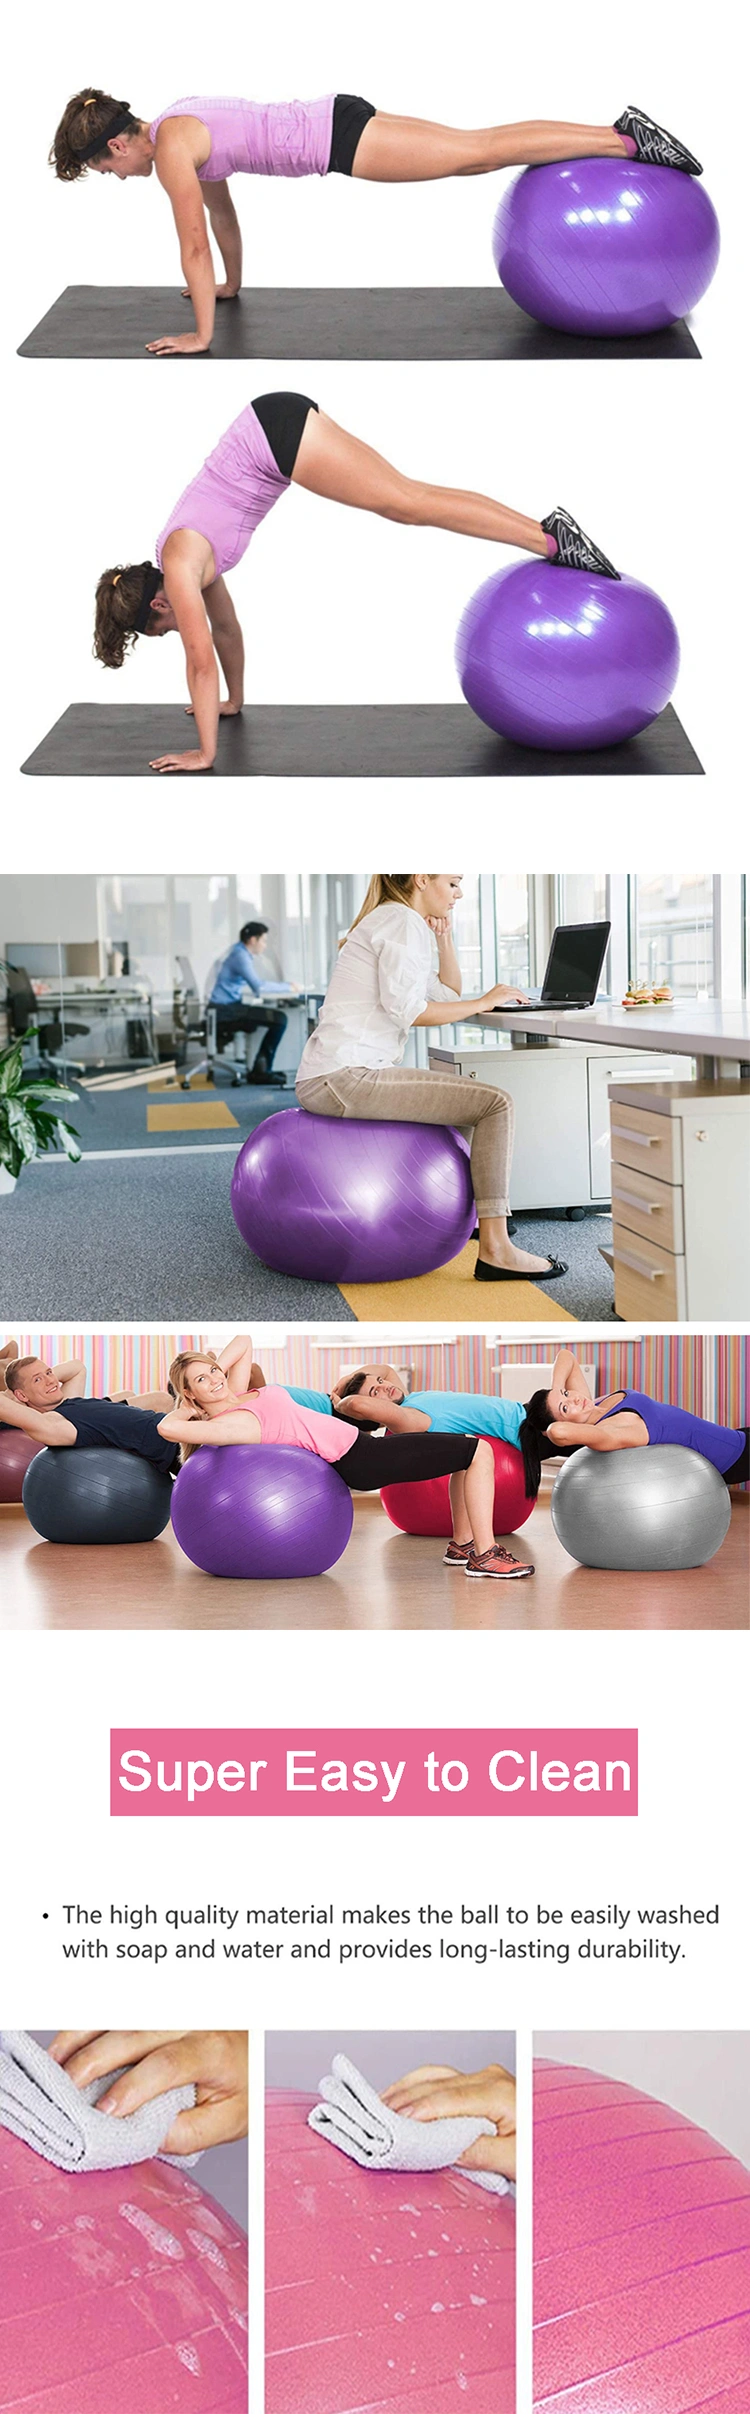 2021 Hot Massage Bosu Balance Exercise Pilates Gym Yoga Ball